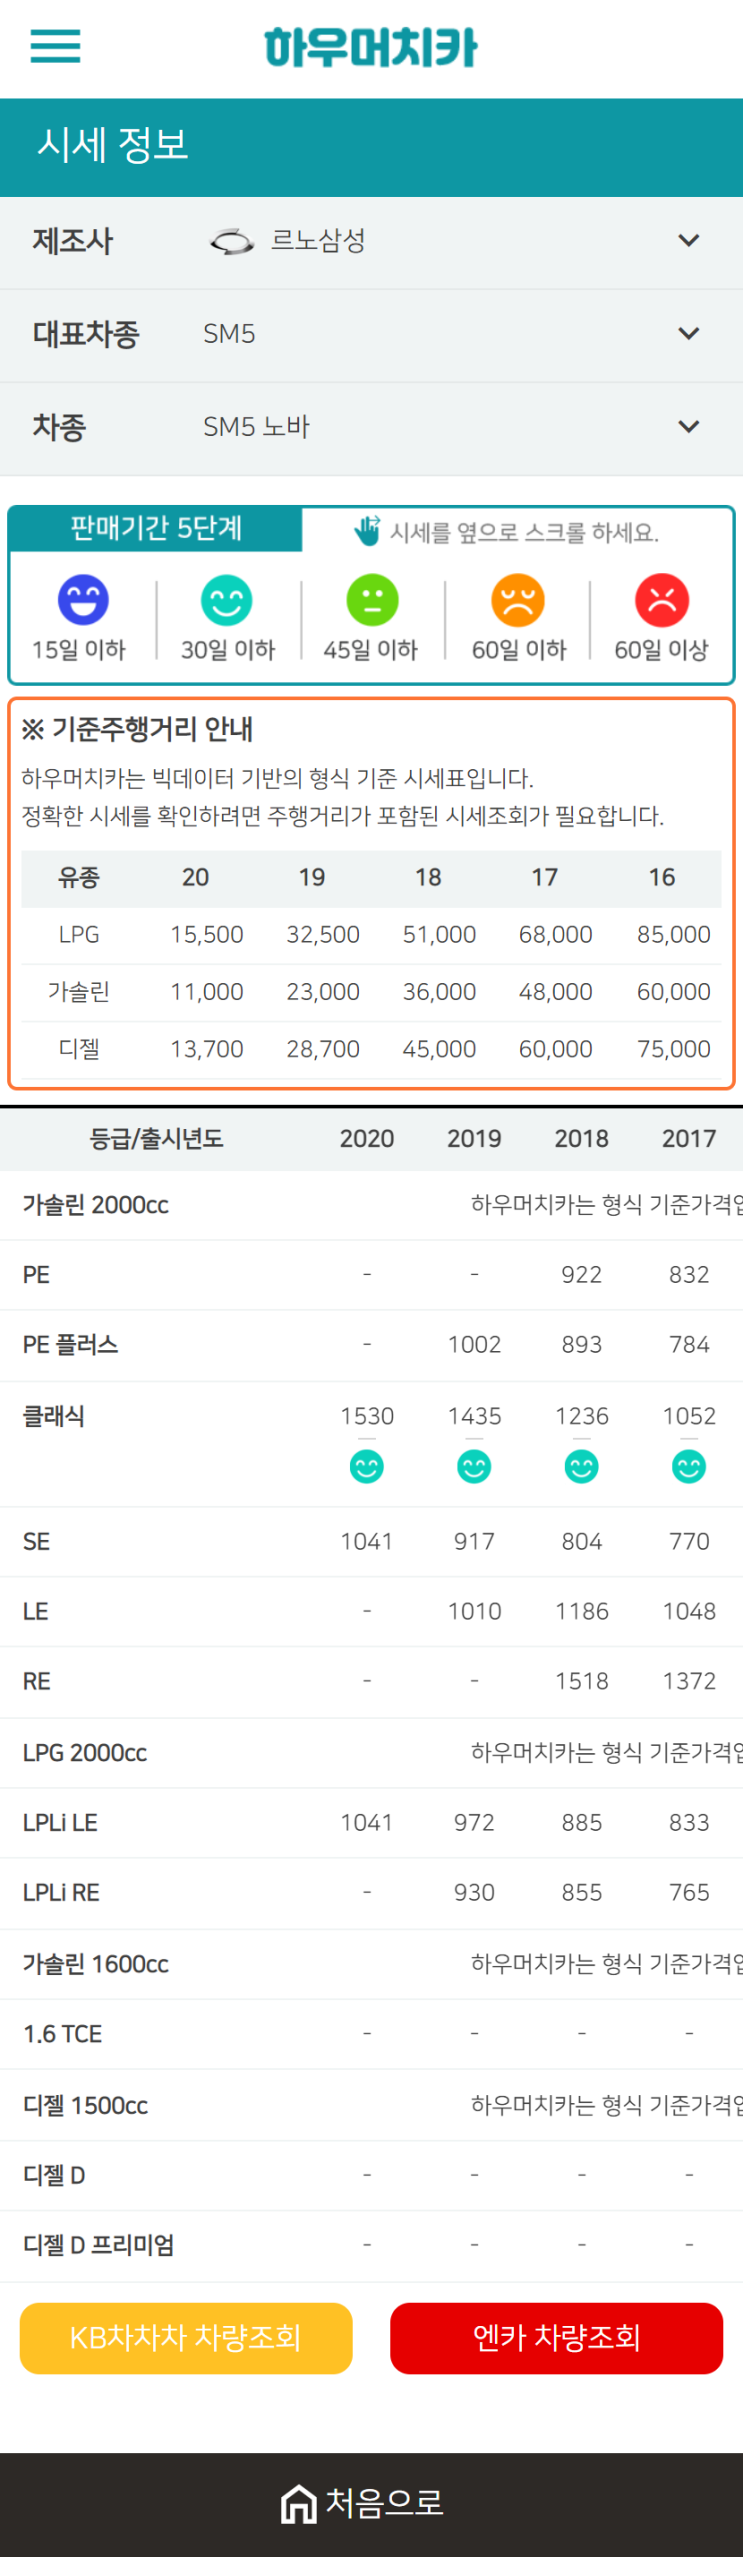 하우머치카 2021년 1월 SM5 노바 중고차가격.시세표